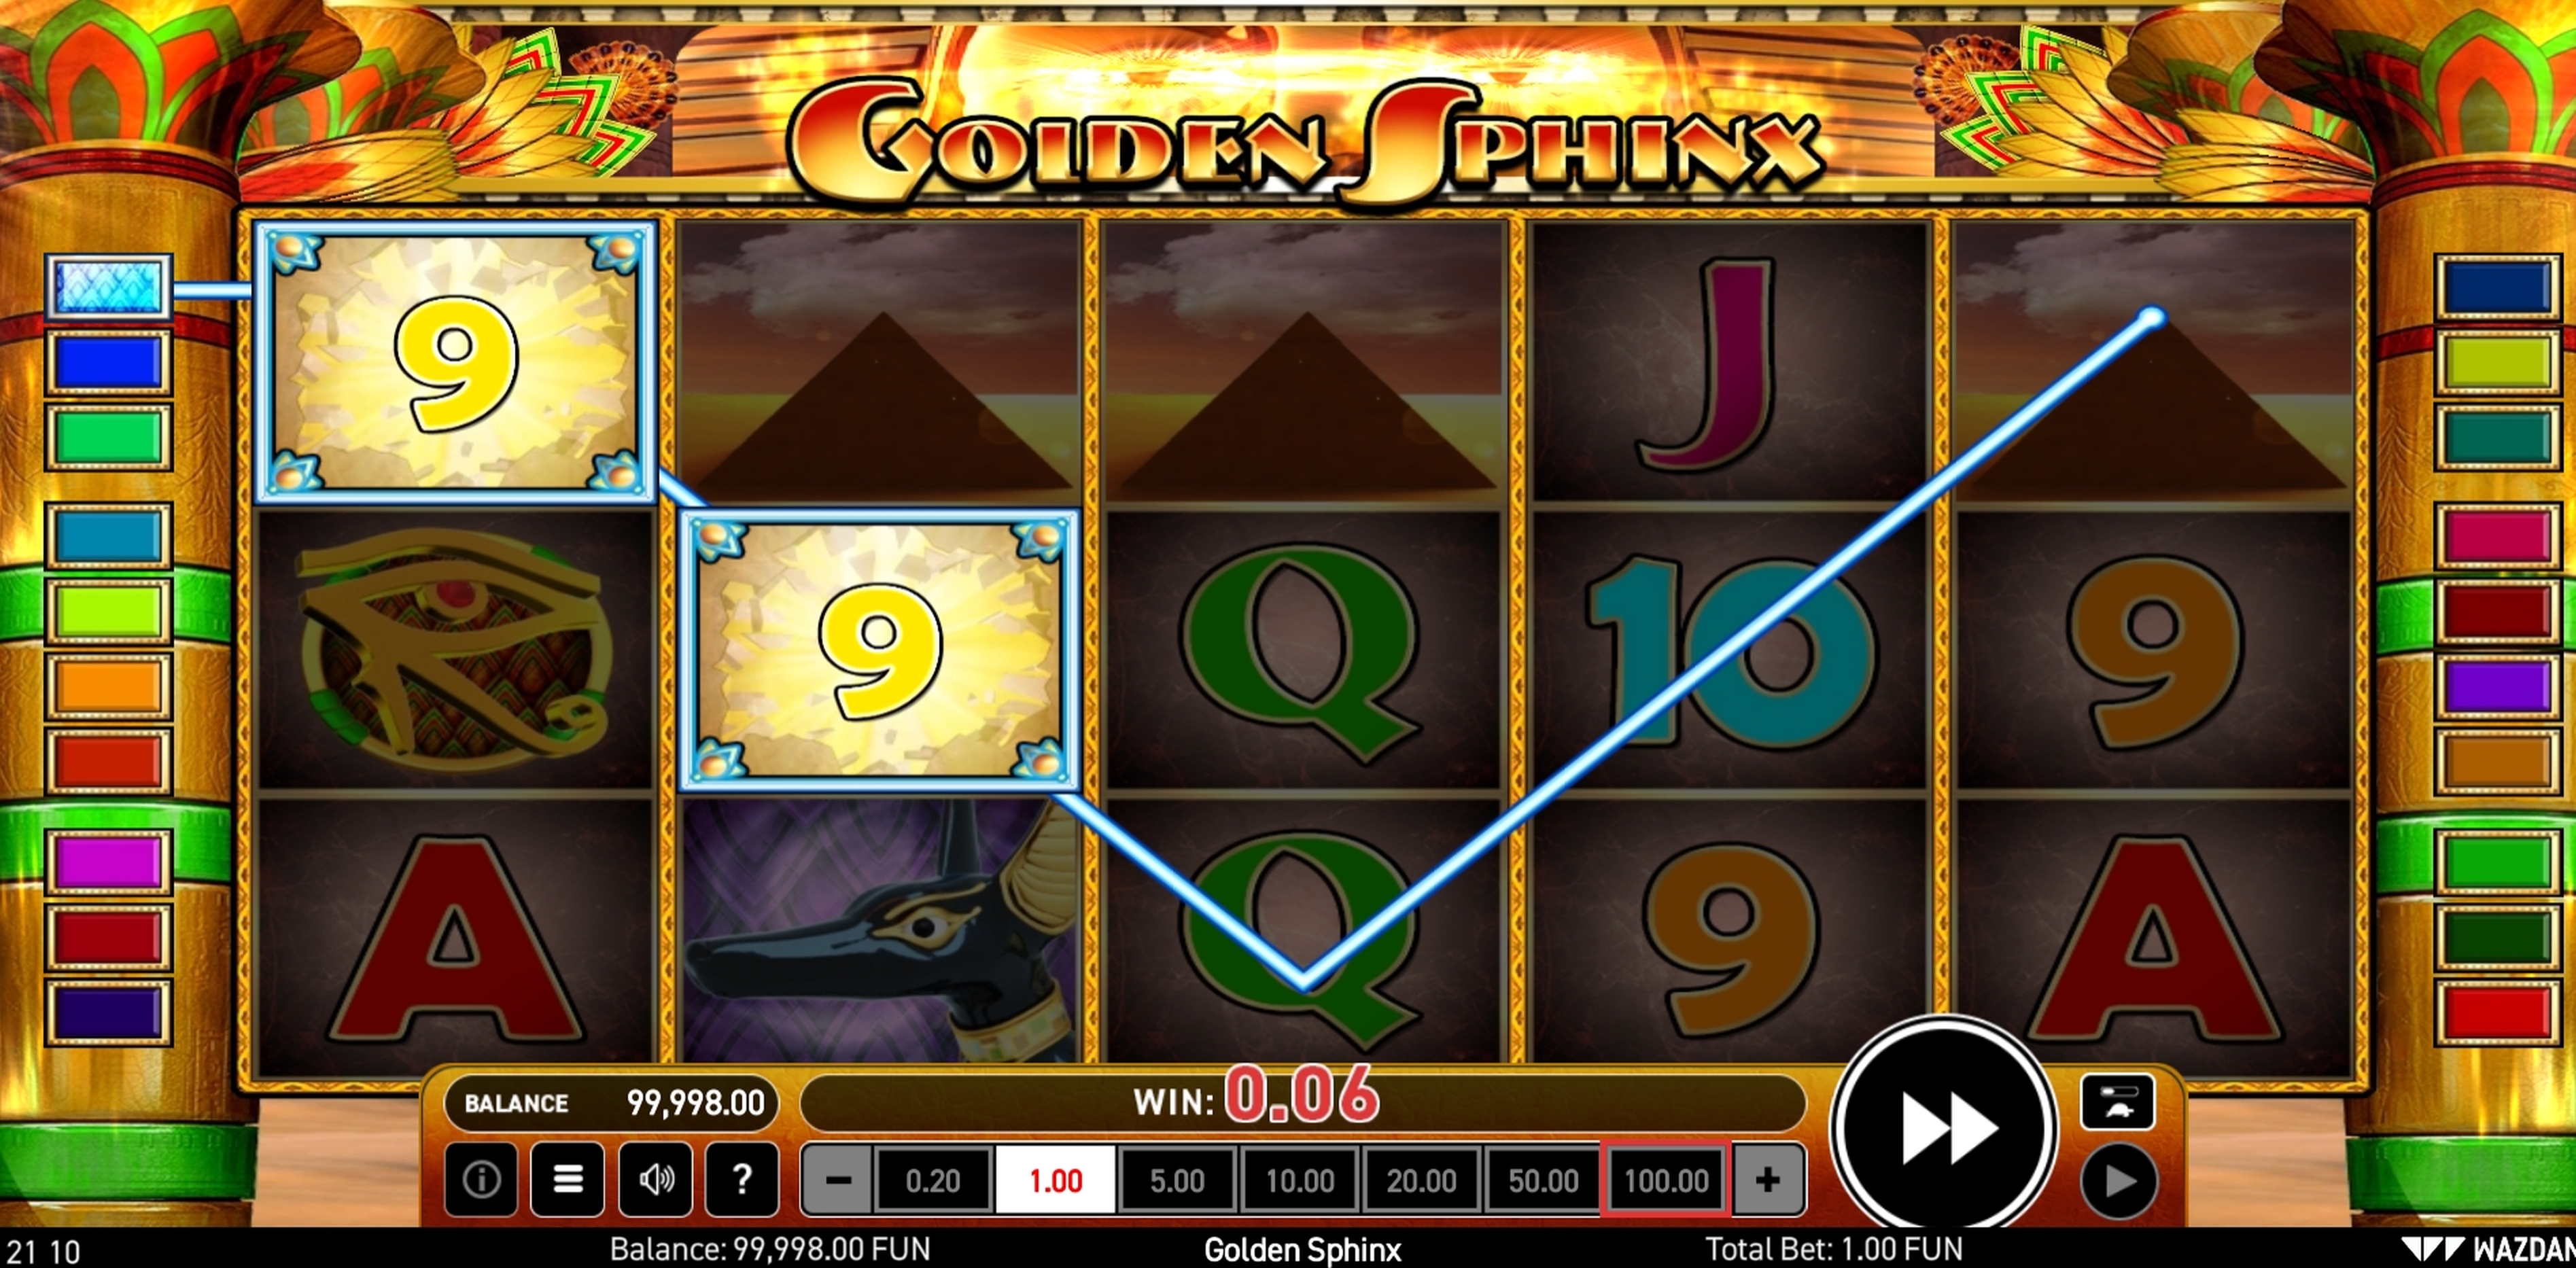 Win Money in Golden Sphinx Free Slot Game by Wazdan